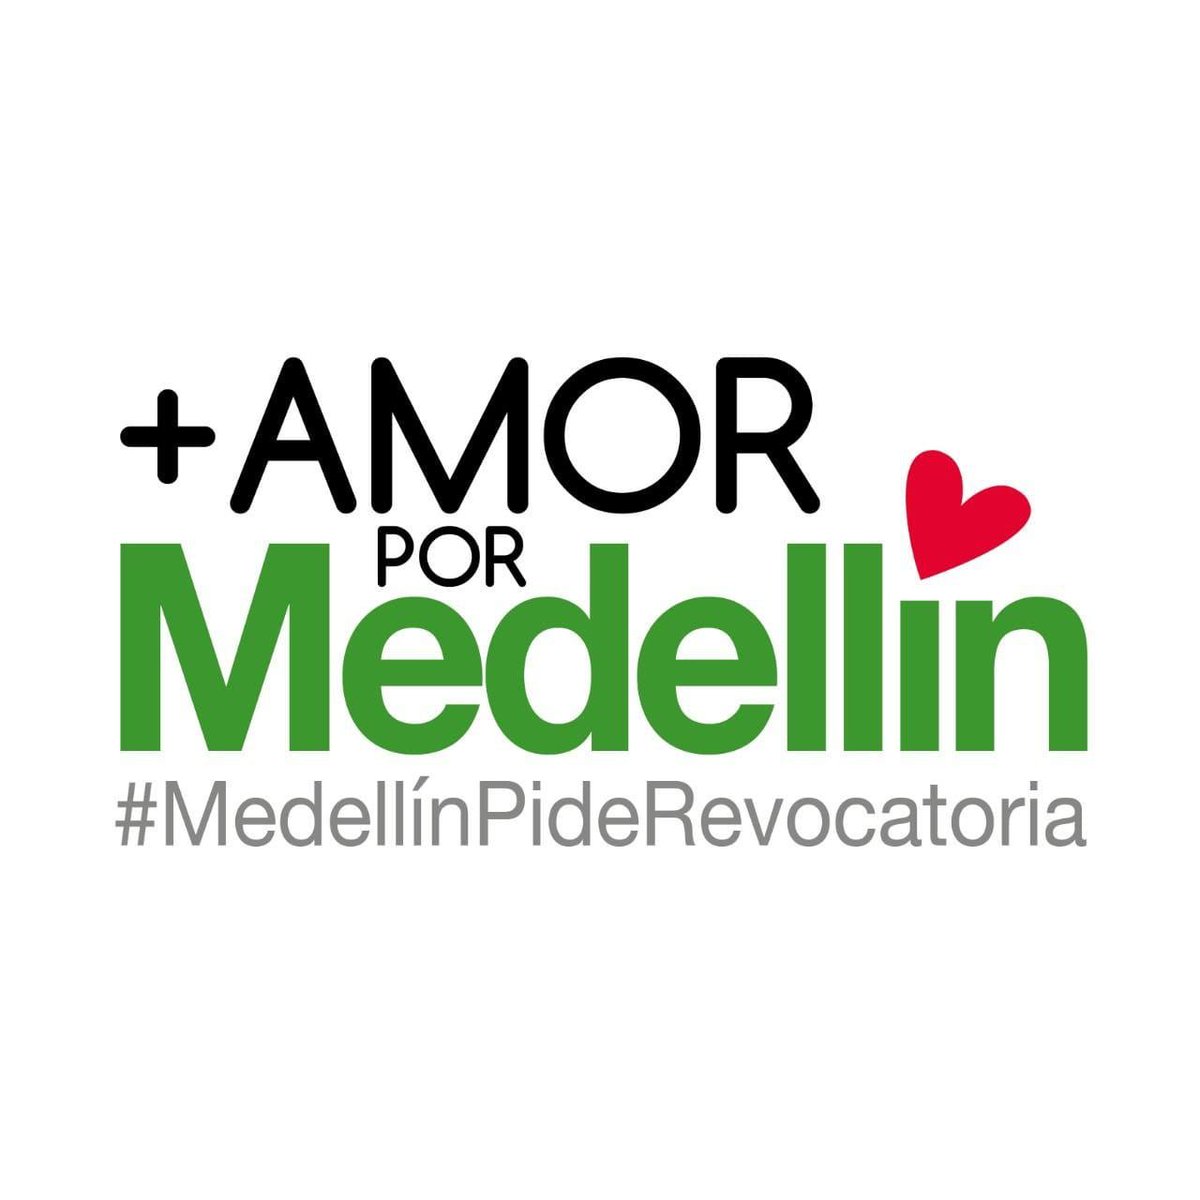 Amor por lo nuestro #TodosXMedellin #SuenoCon #FelizViernesATodos #BuenViernes #28agosto #BuenosDiasATodos #Los5DeLlanoVerde #UribeEnLibertad #Medellin #Antioquia